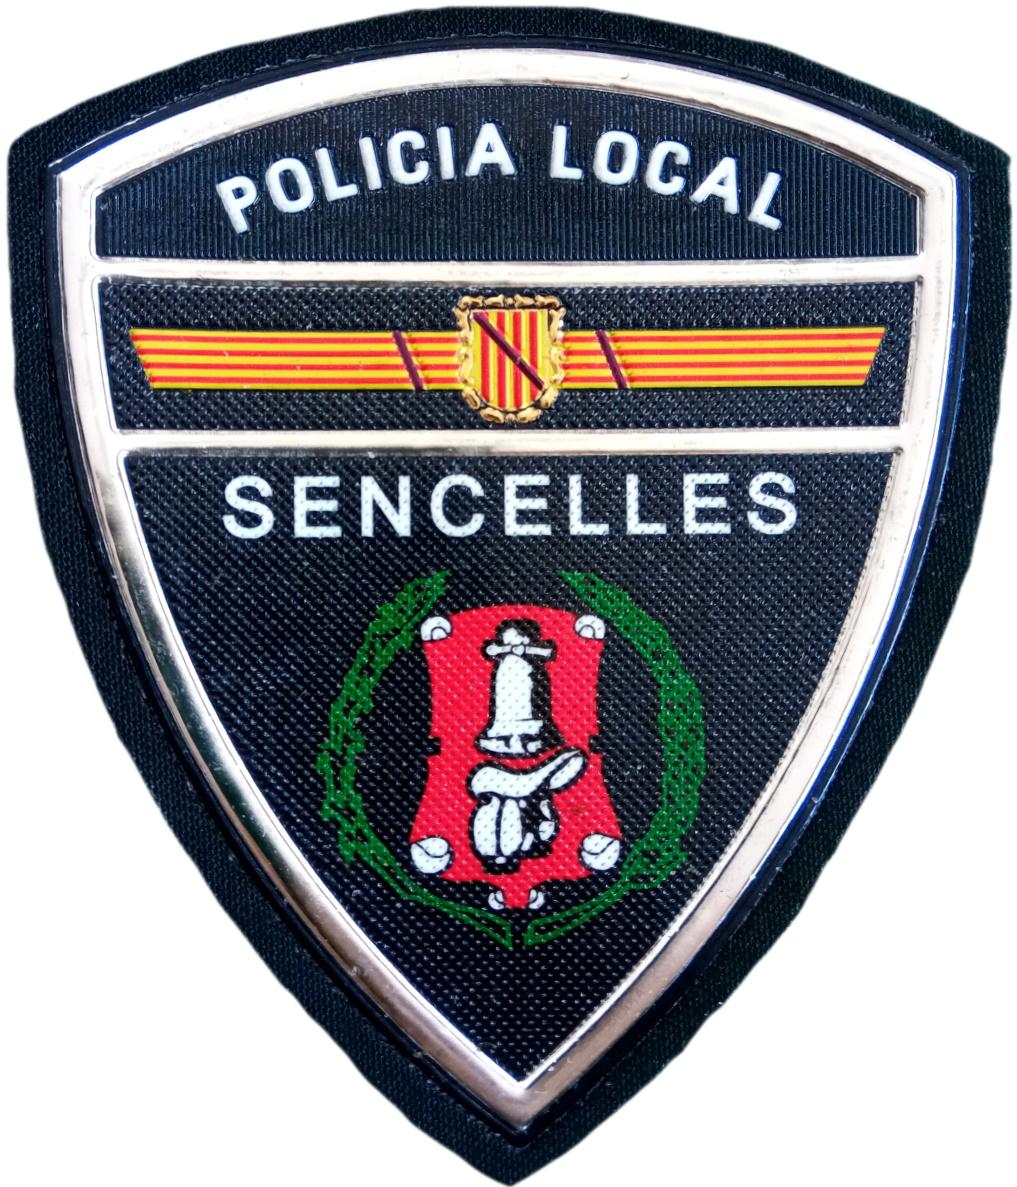 Policía Local Sencelles parche insignia emblema distintivo